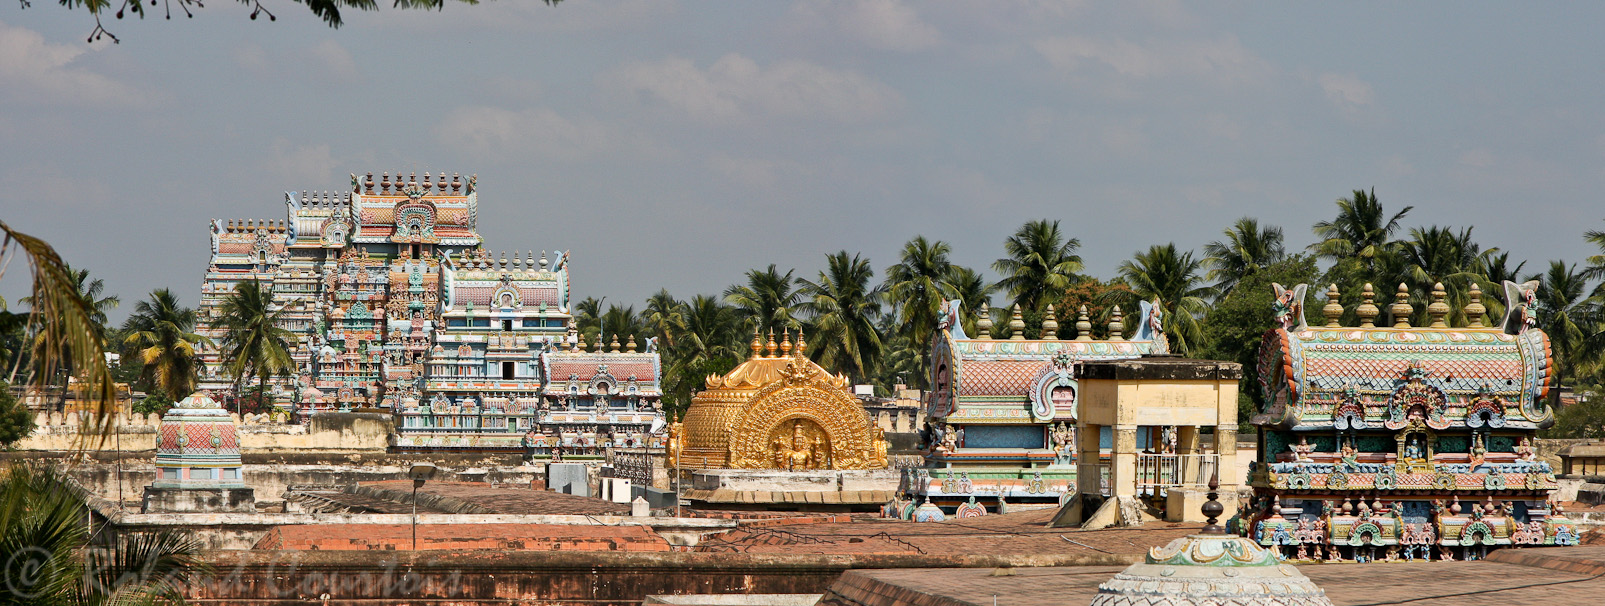 Temple de Srirangam: vue d'ensemble.